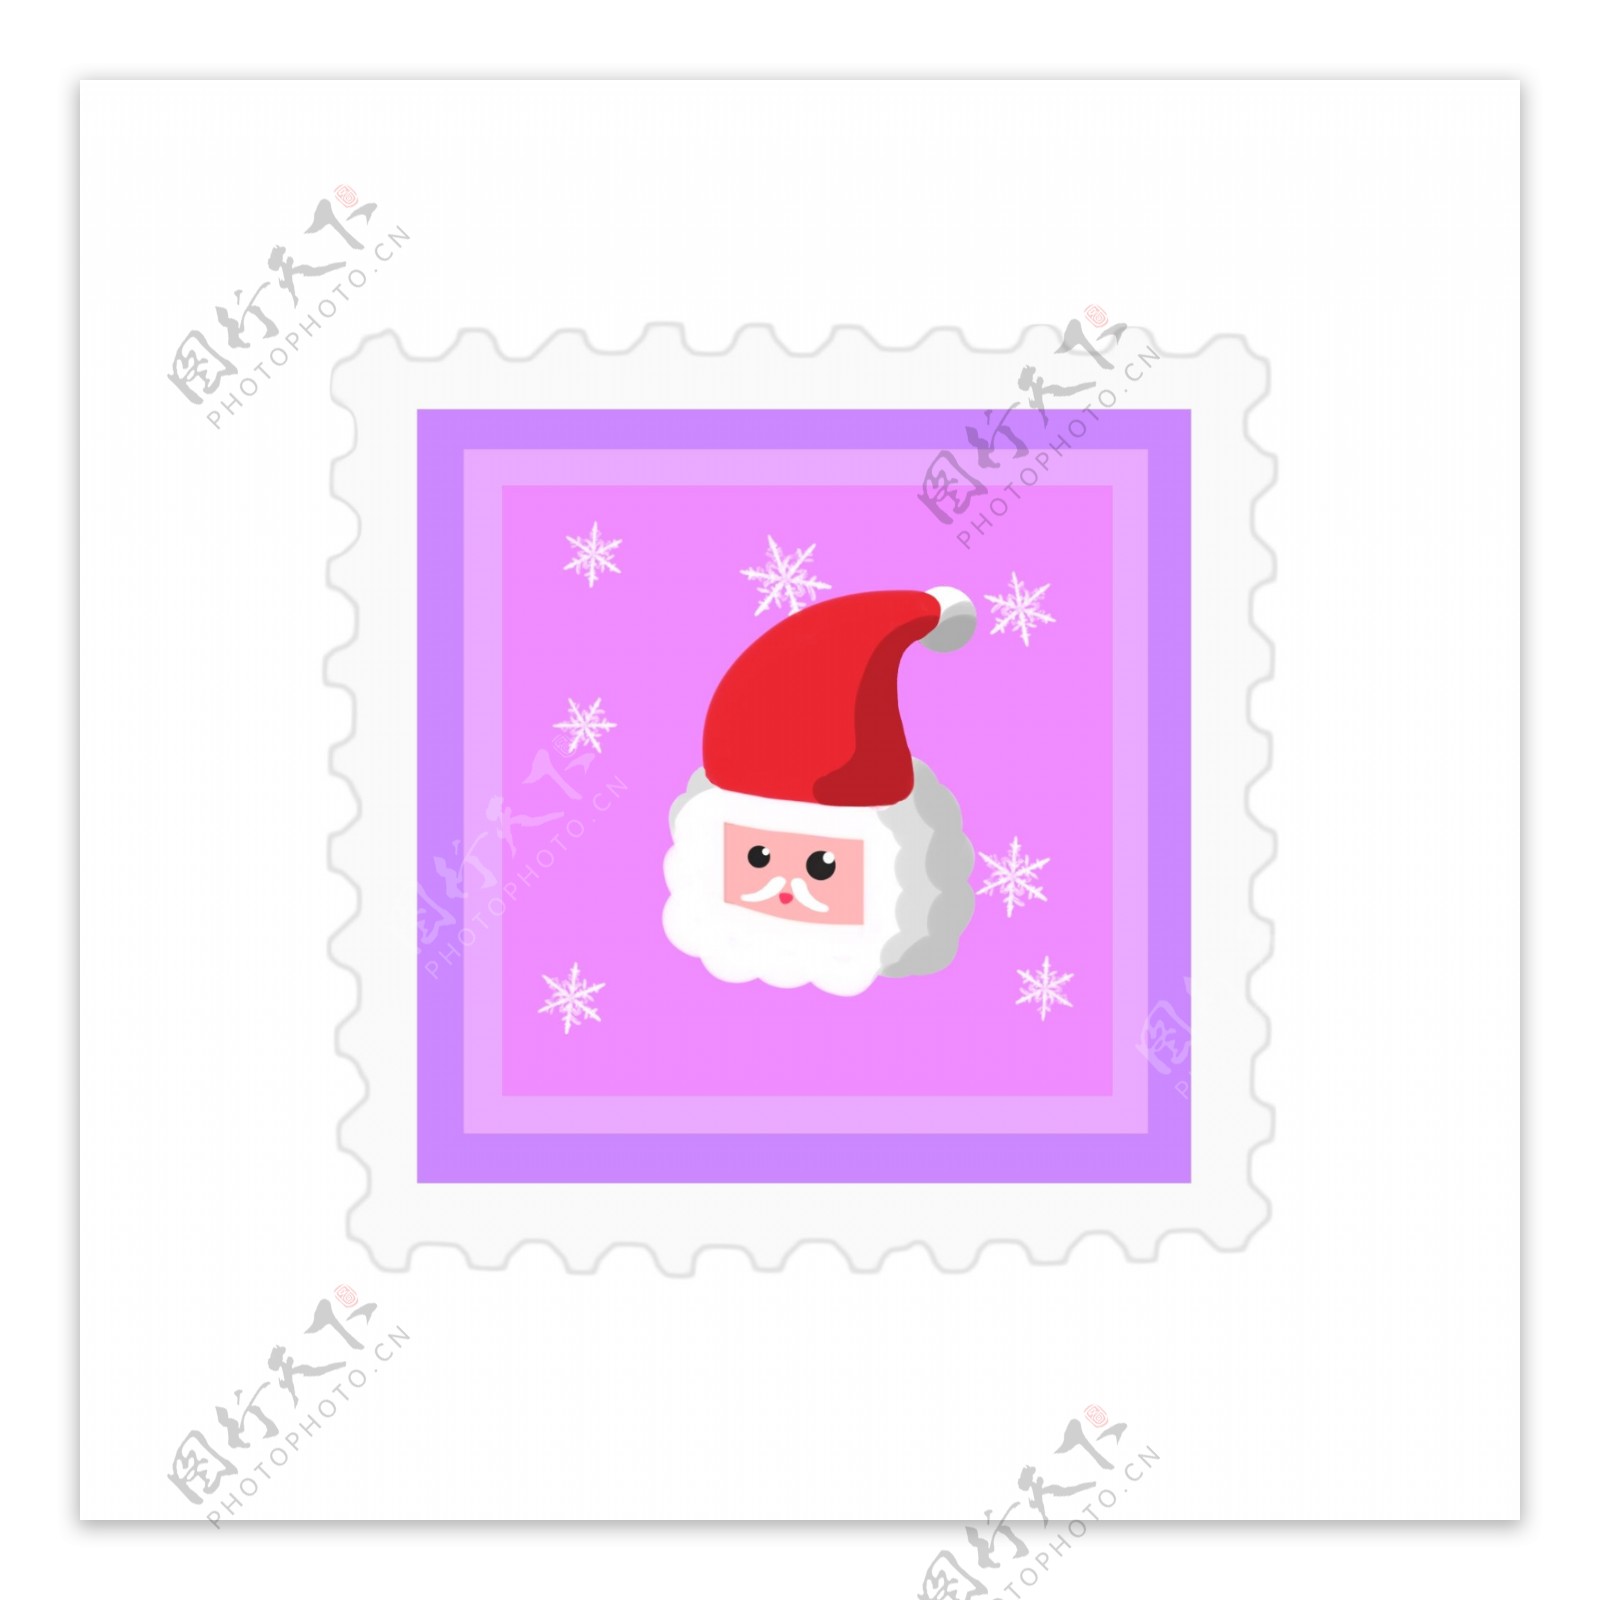 原创圣诞节邮票贴纸可爱元素